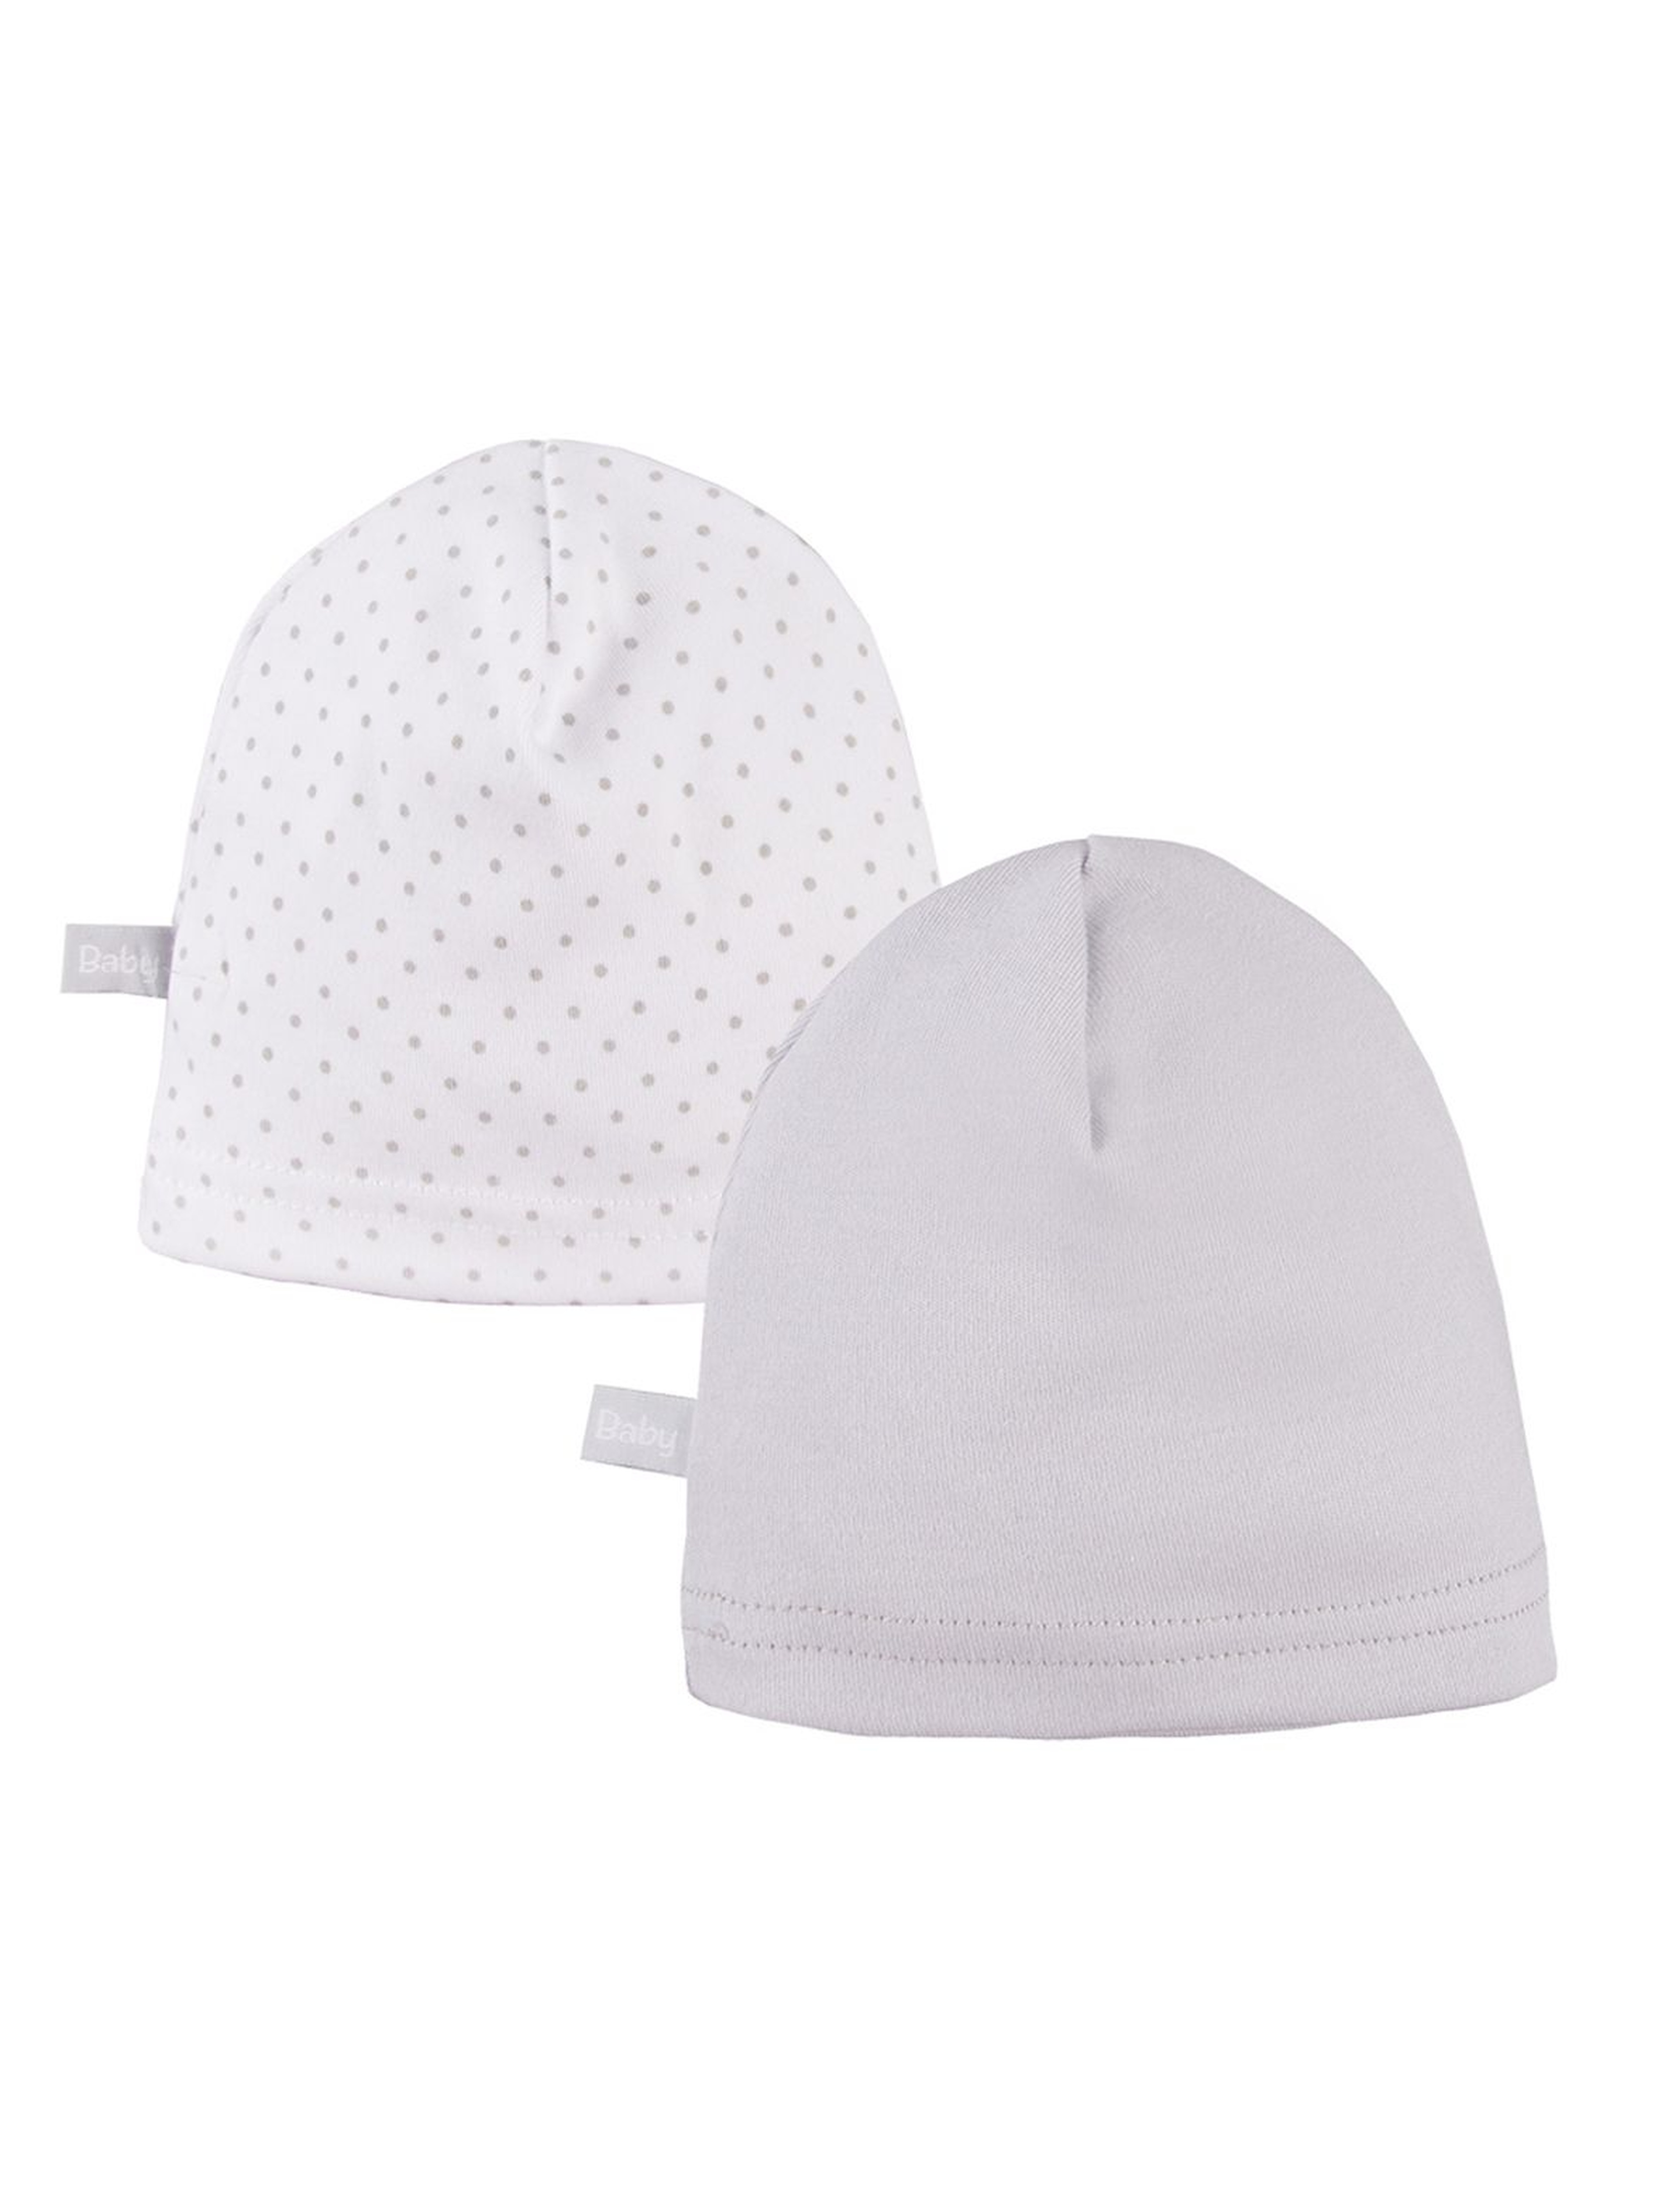 Bawełniane czapki niemowlęce 2pak - szare